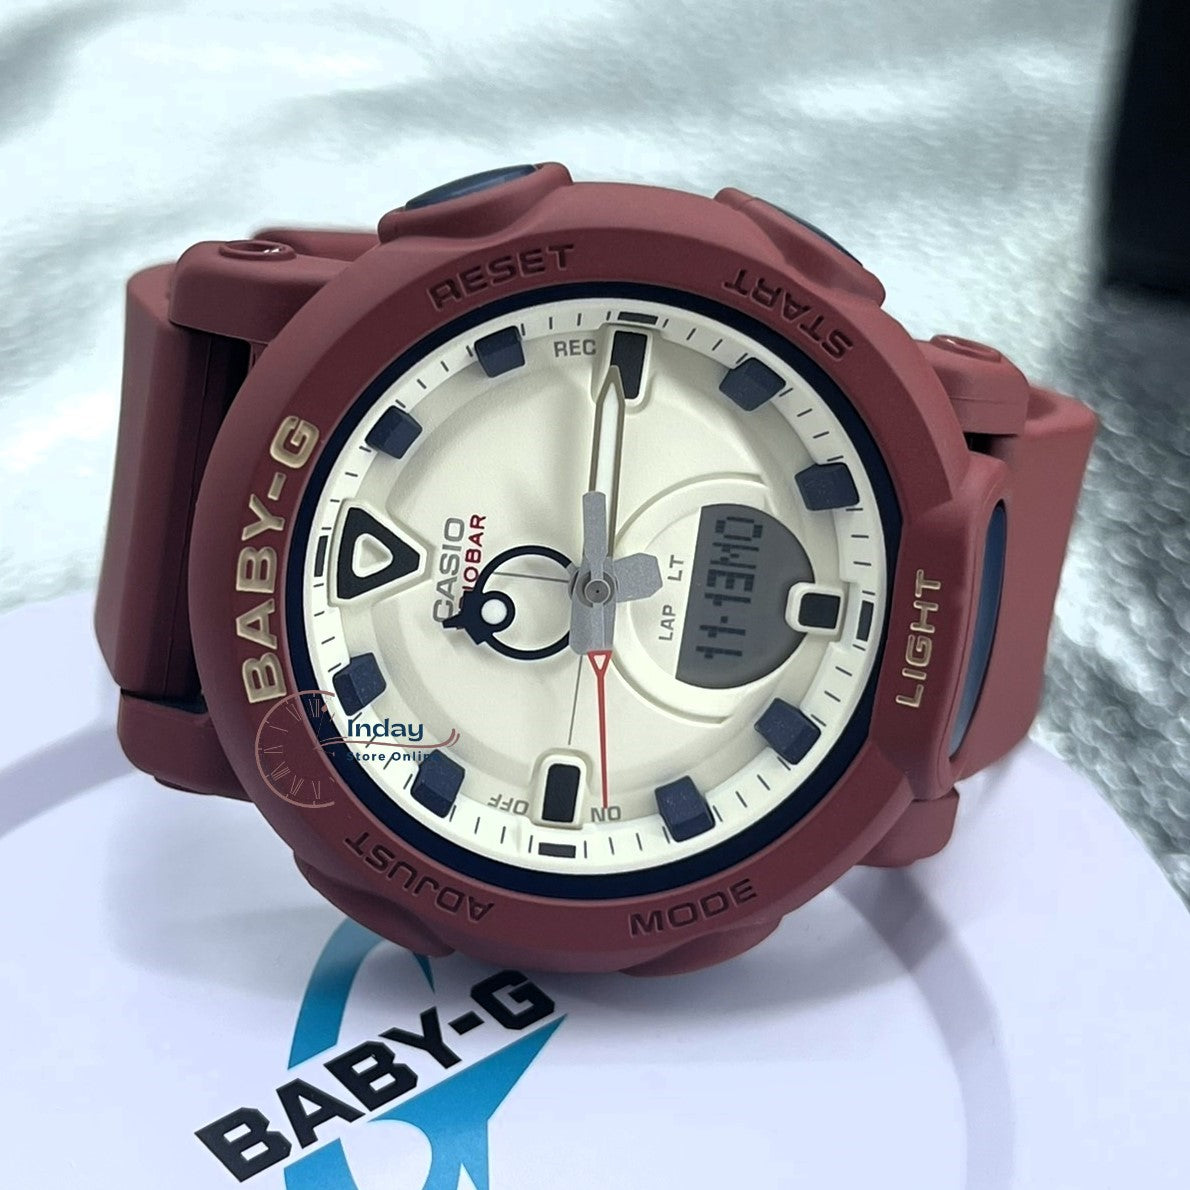 Casio Baby-G Women's Watch BGA-310RP-4A